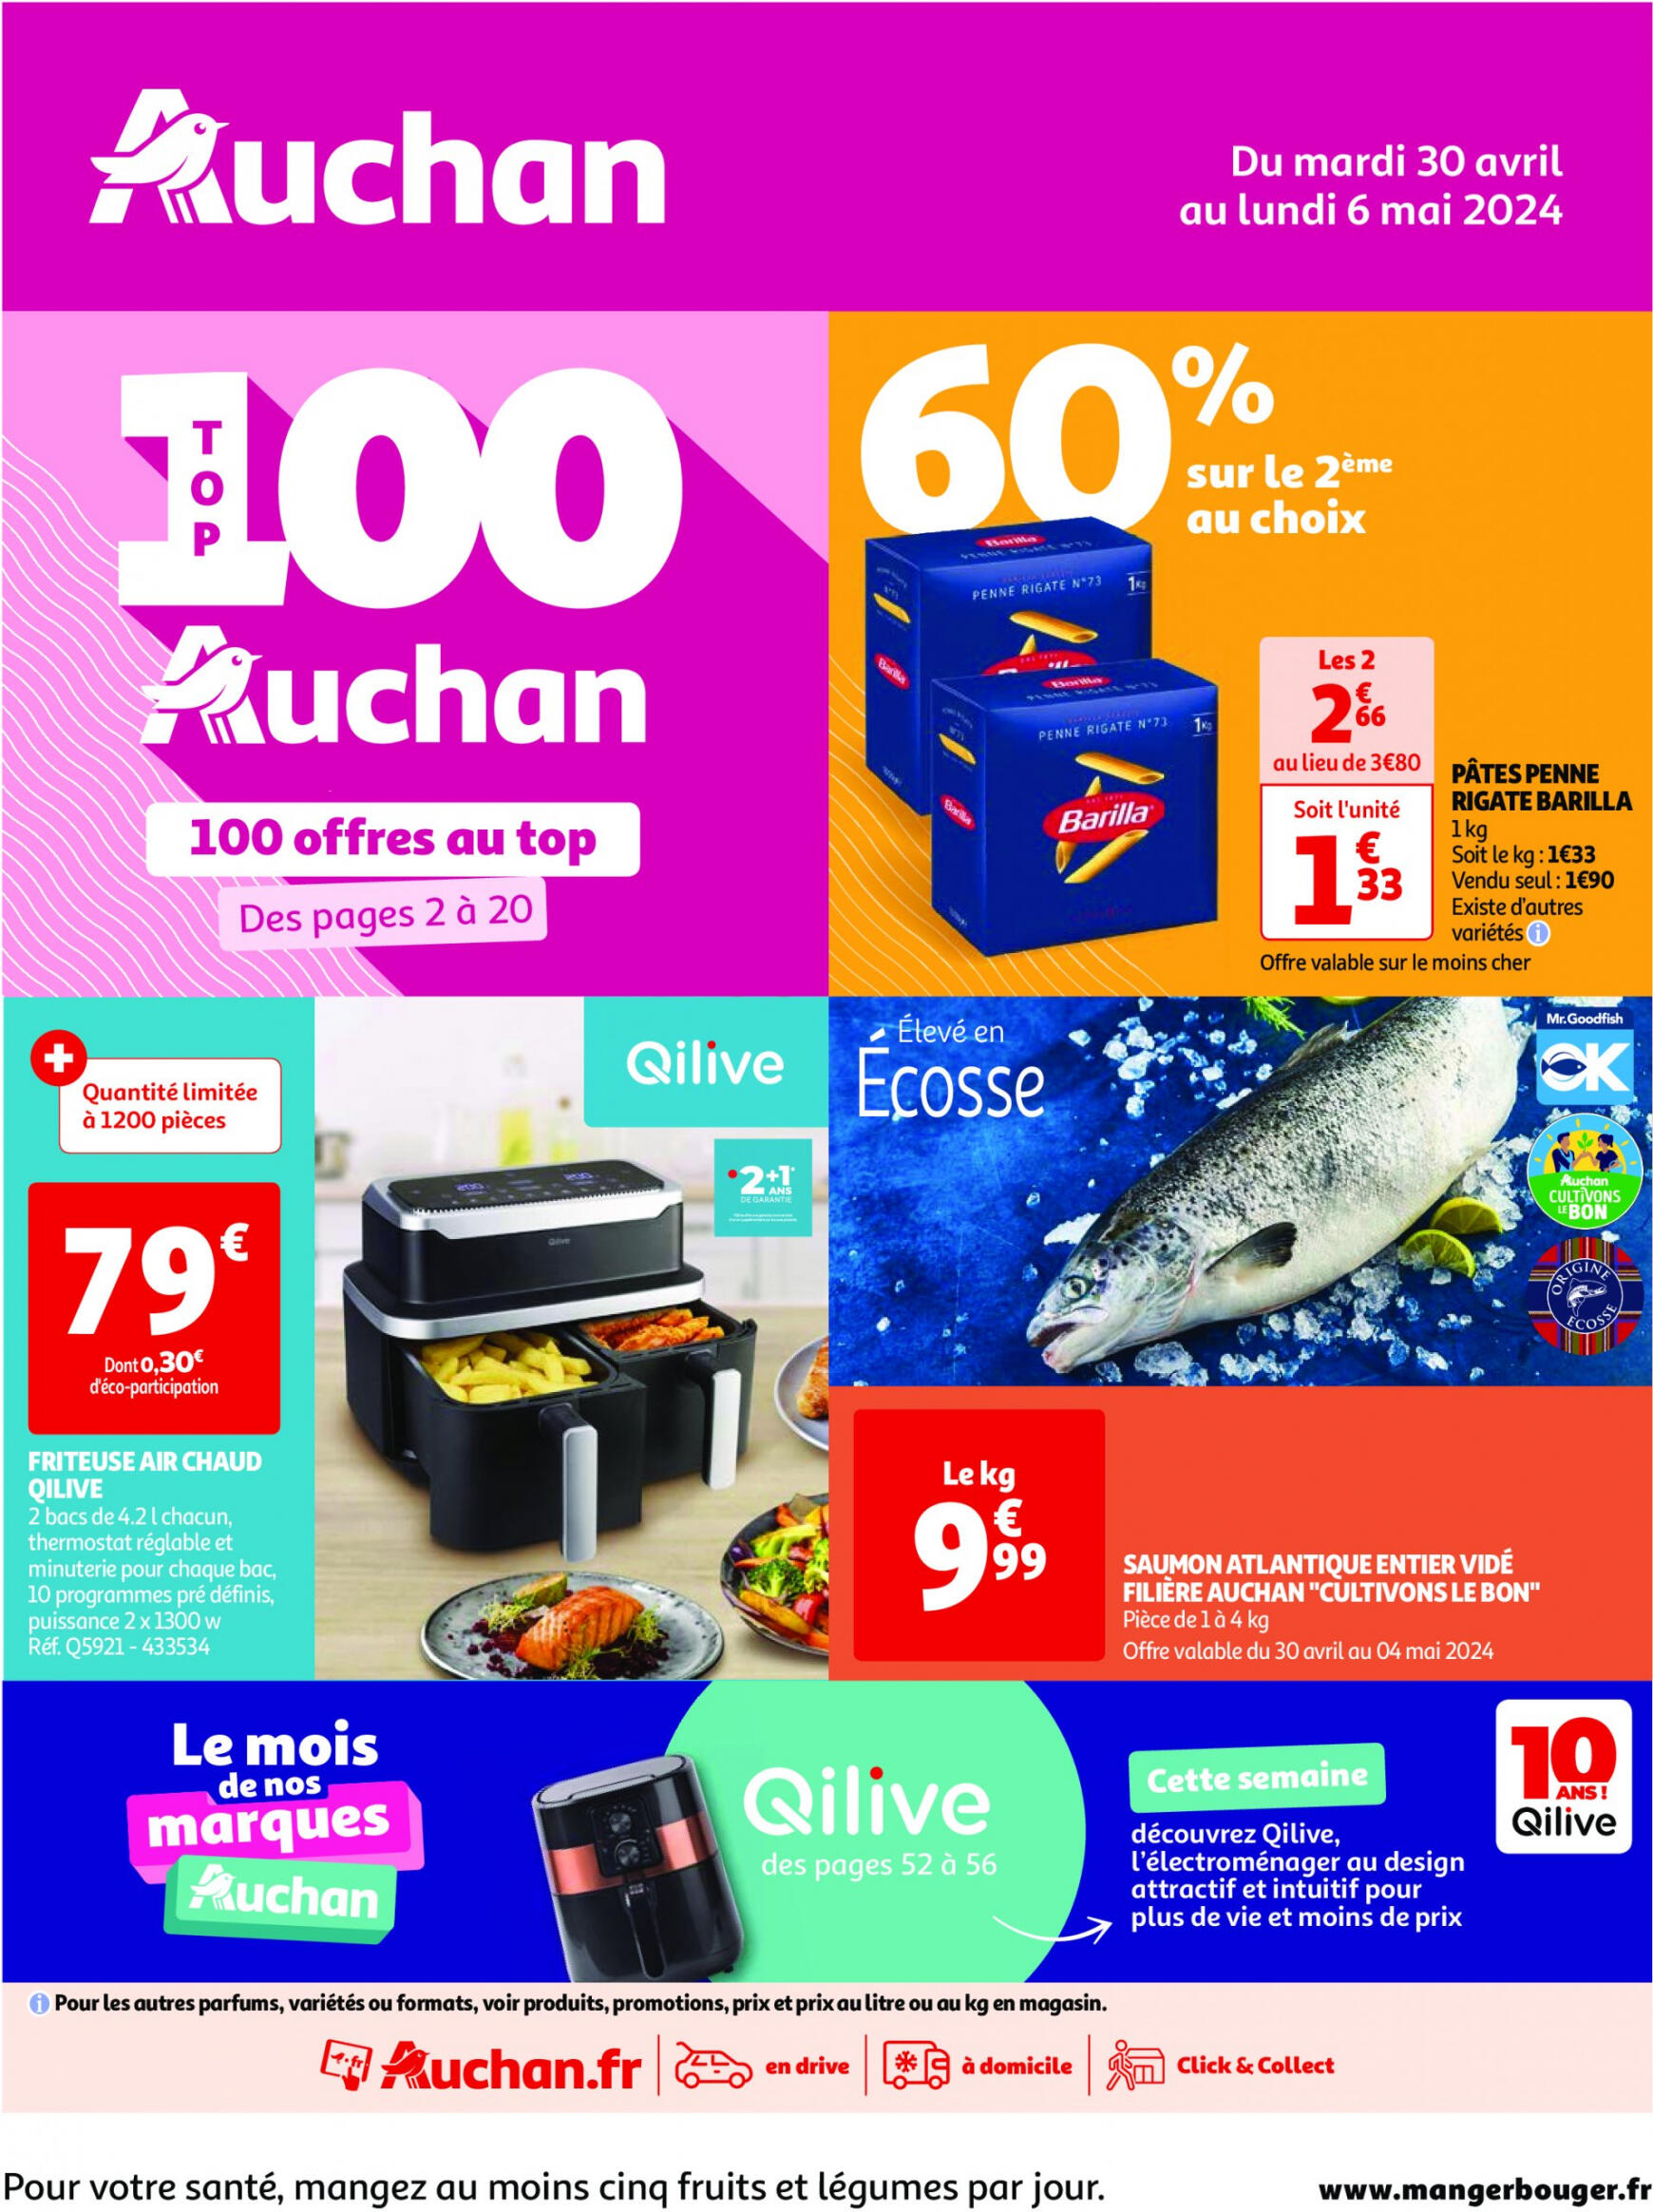 auchan - Prospectus Auchan actuel 30.04. - 06.05. - page: 1